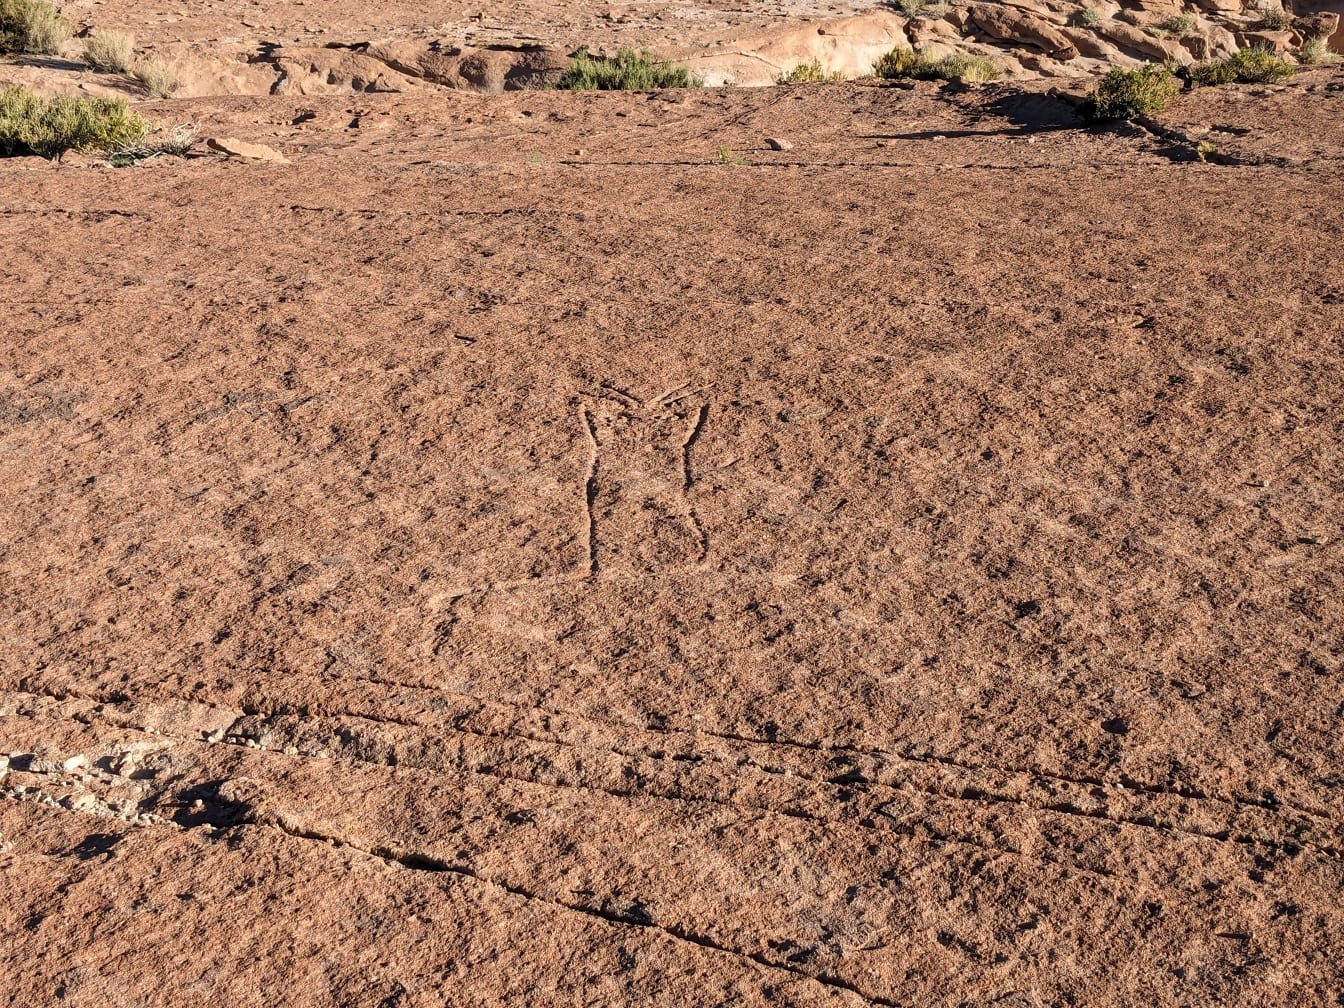 Szlifowane ryty naskalne na pustyni podobne do linii Nazca